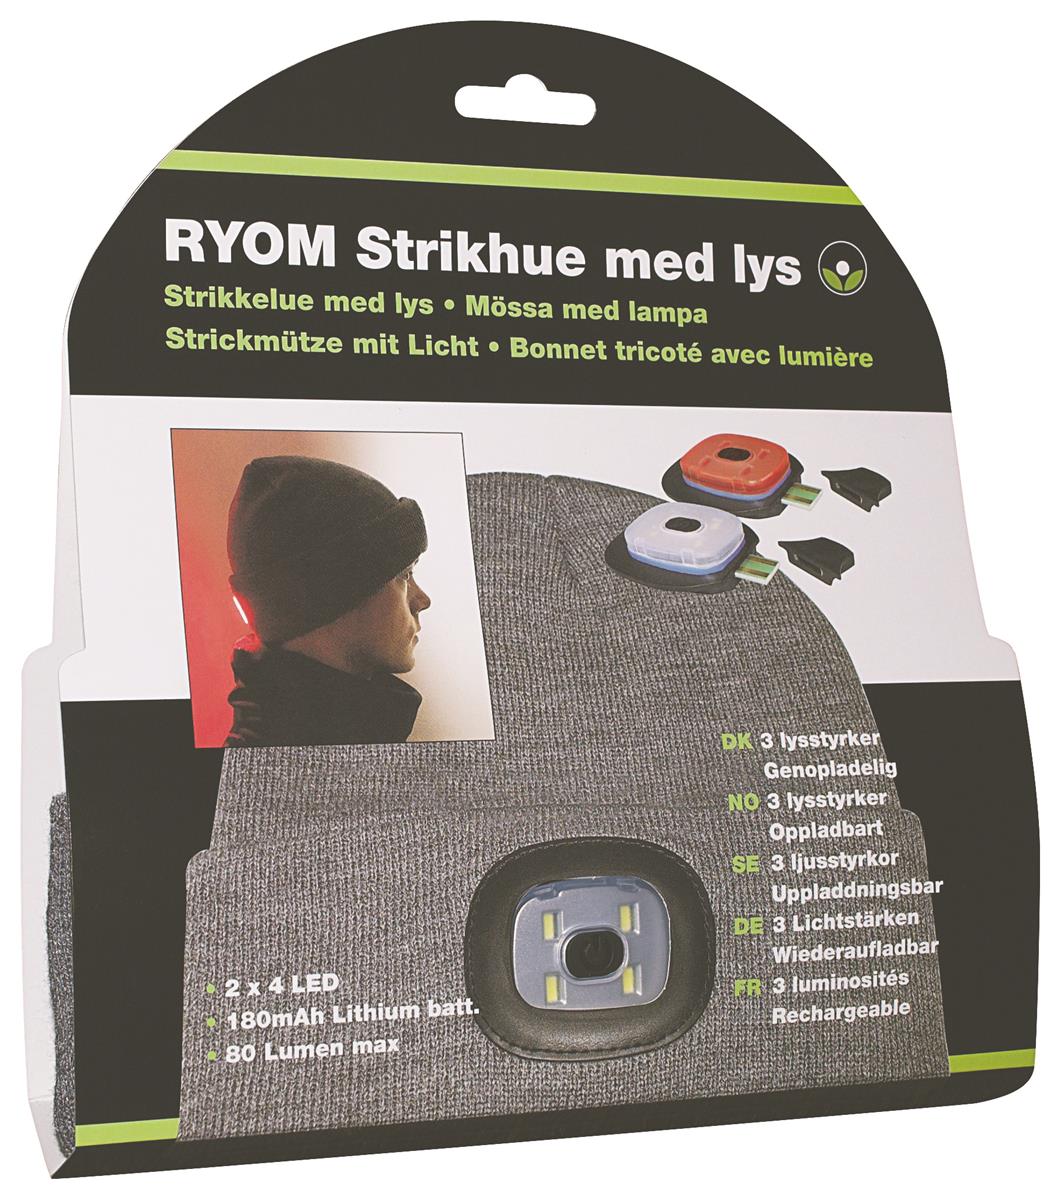 Ryom Mütze mit LED-Kopflampe vorne und hinten